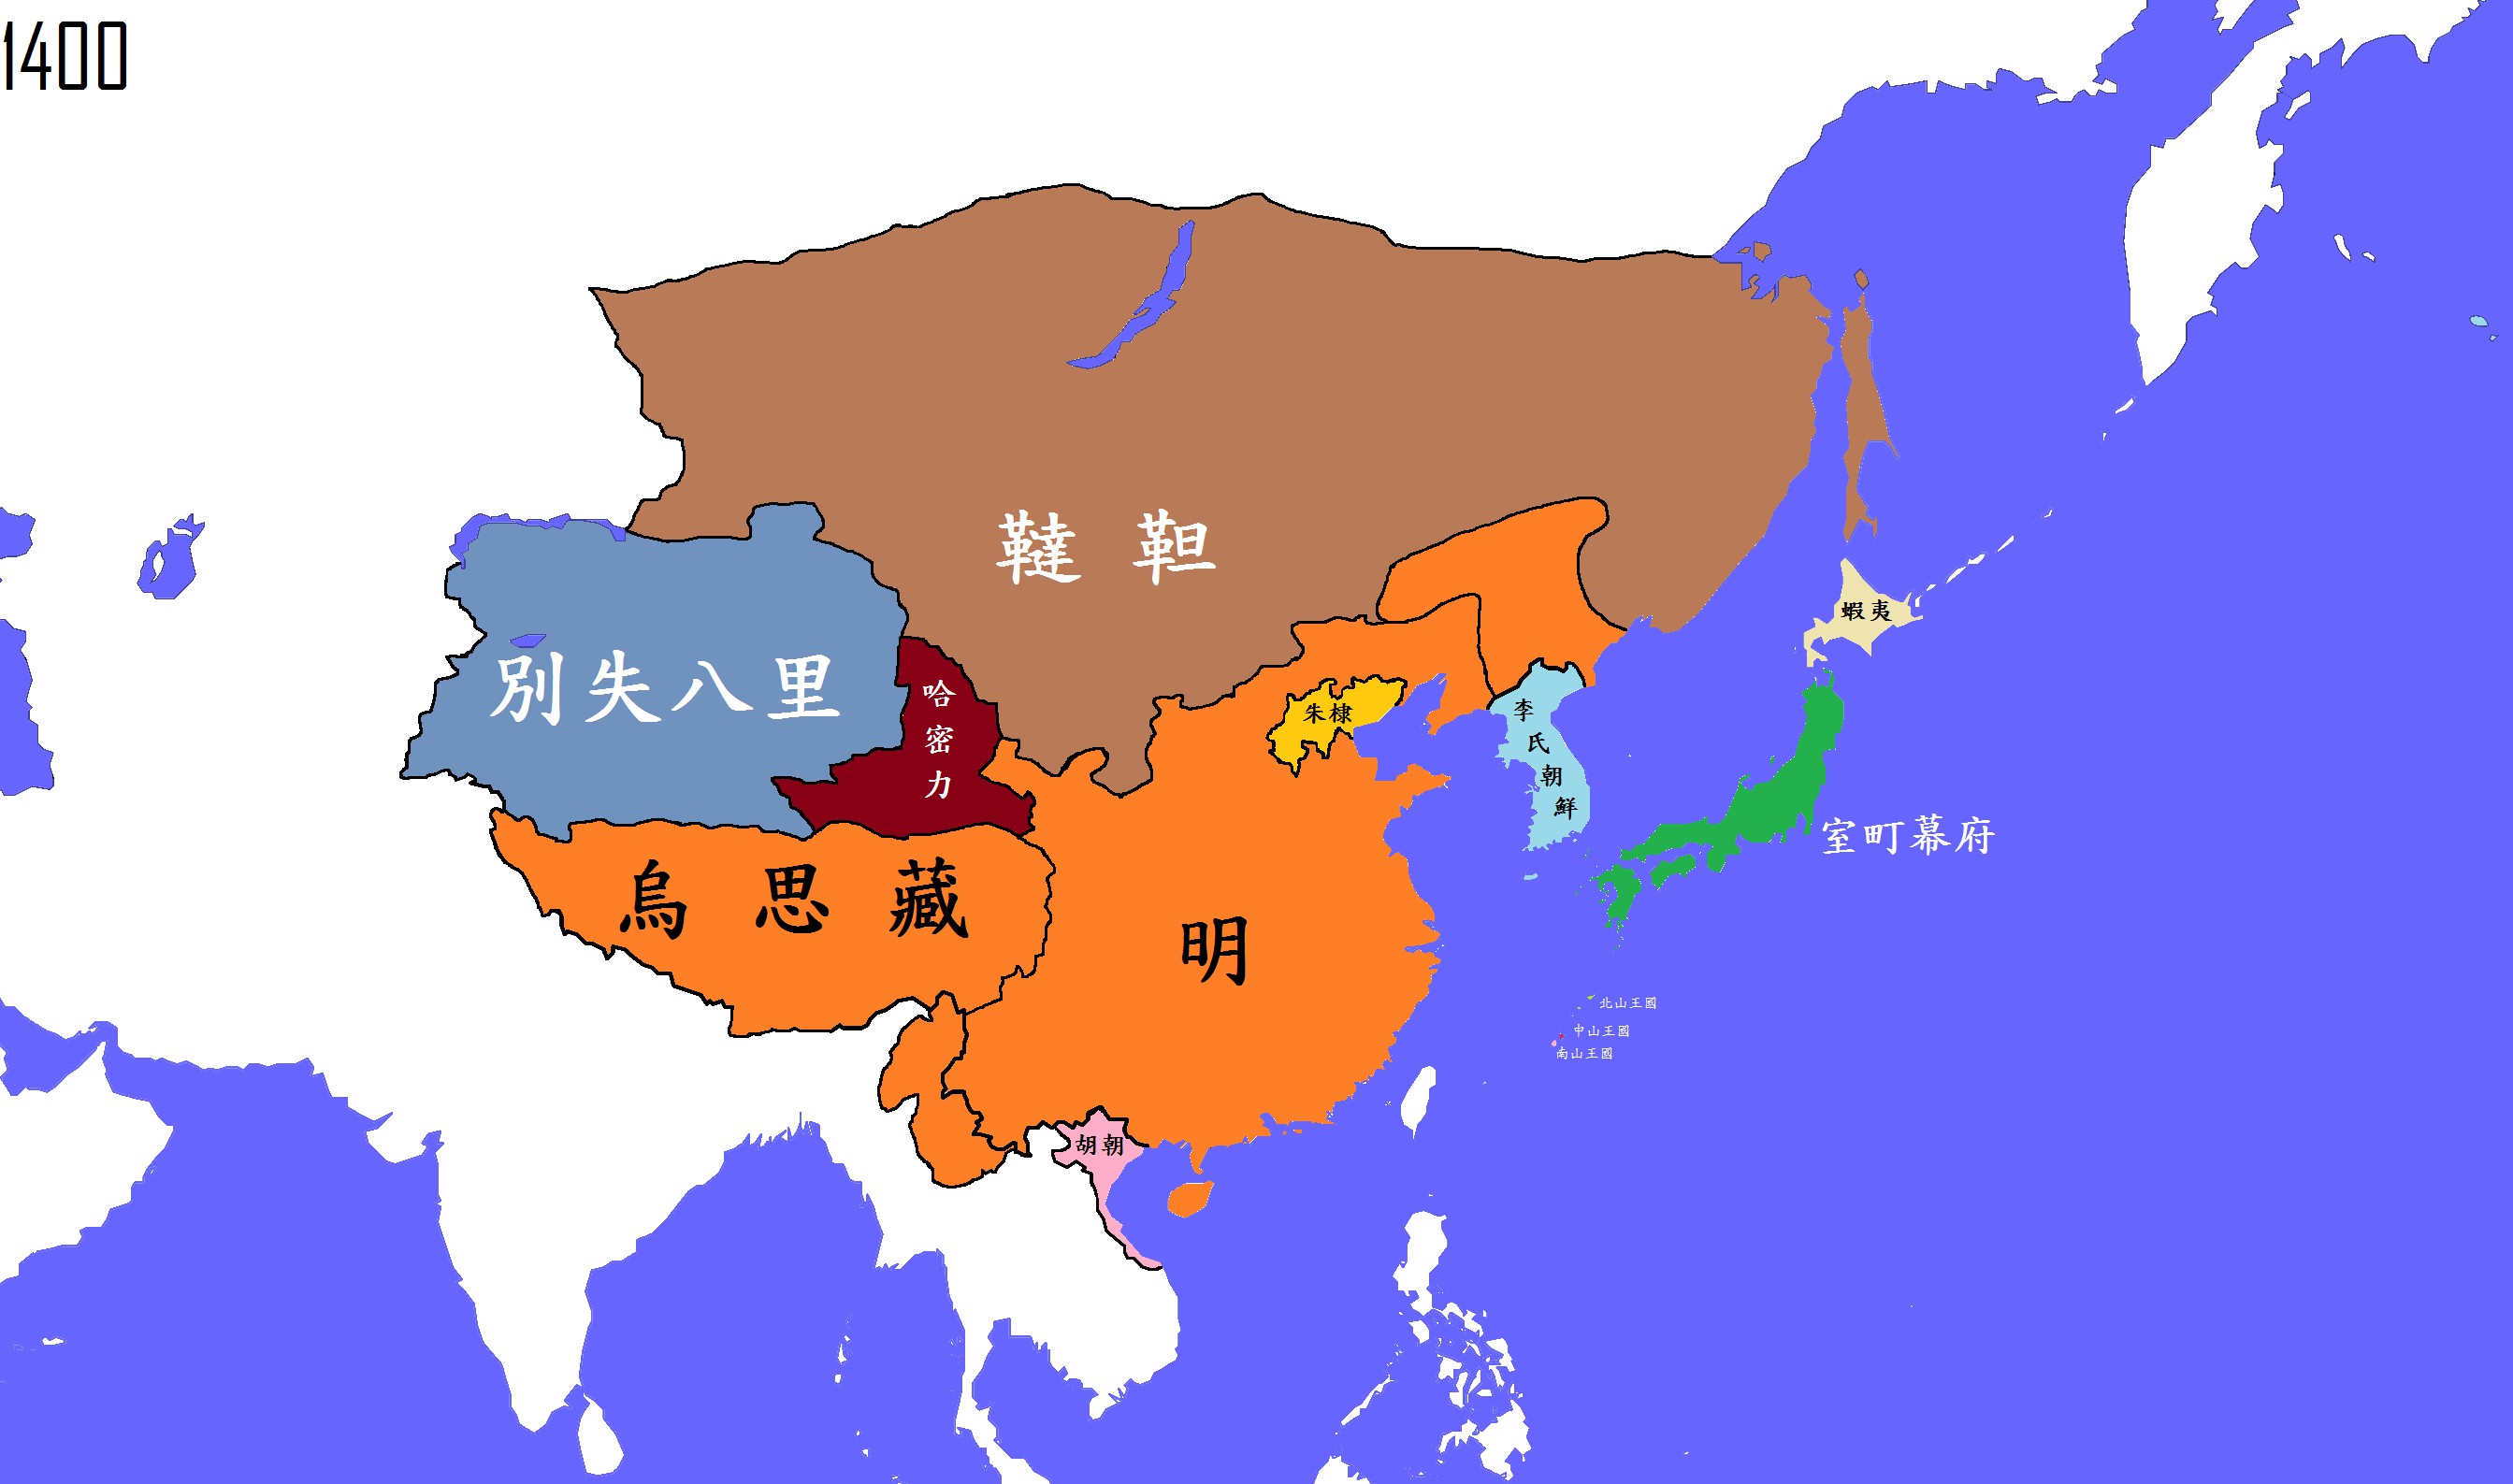 公元1400年(明)_中国疆域地图查询